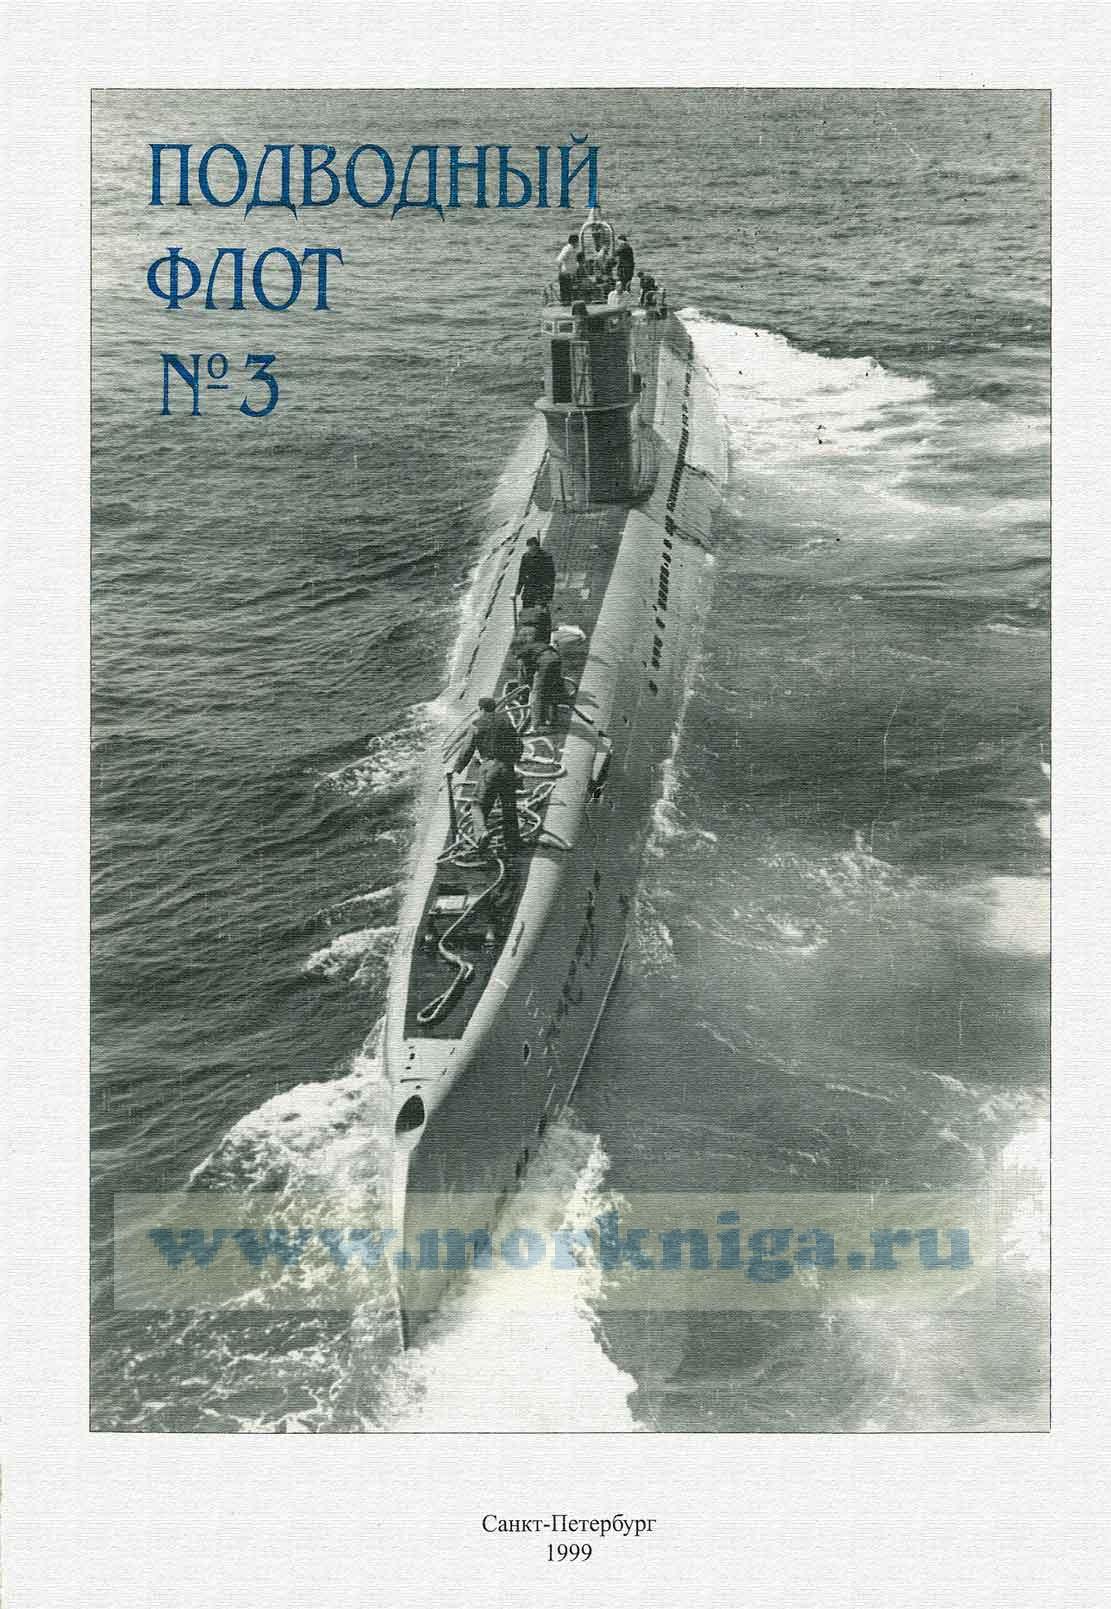 Журнал "Подводный флот" №3